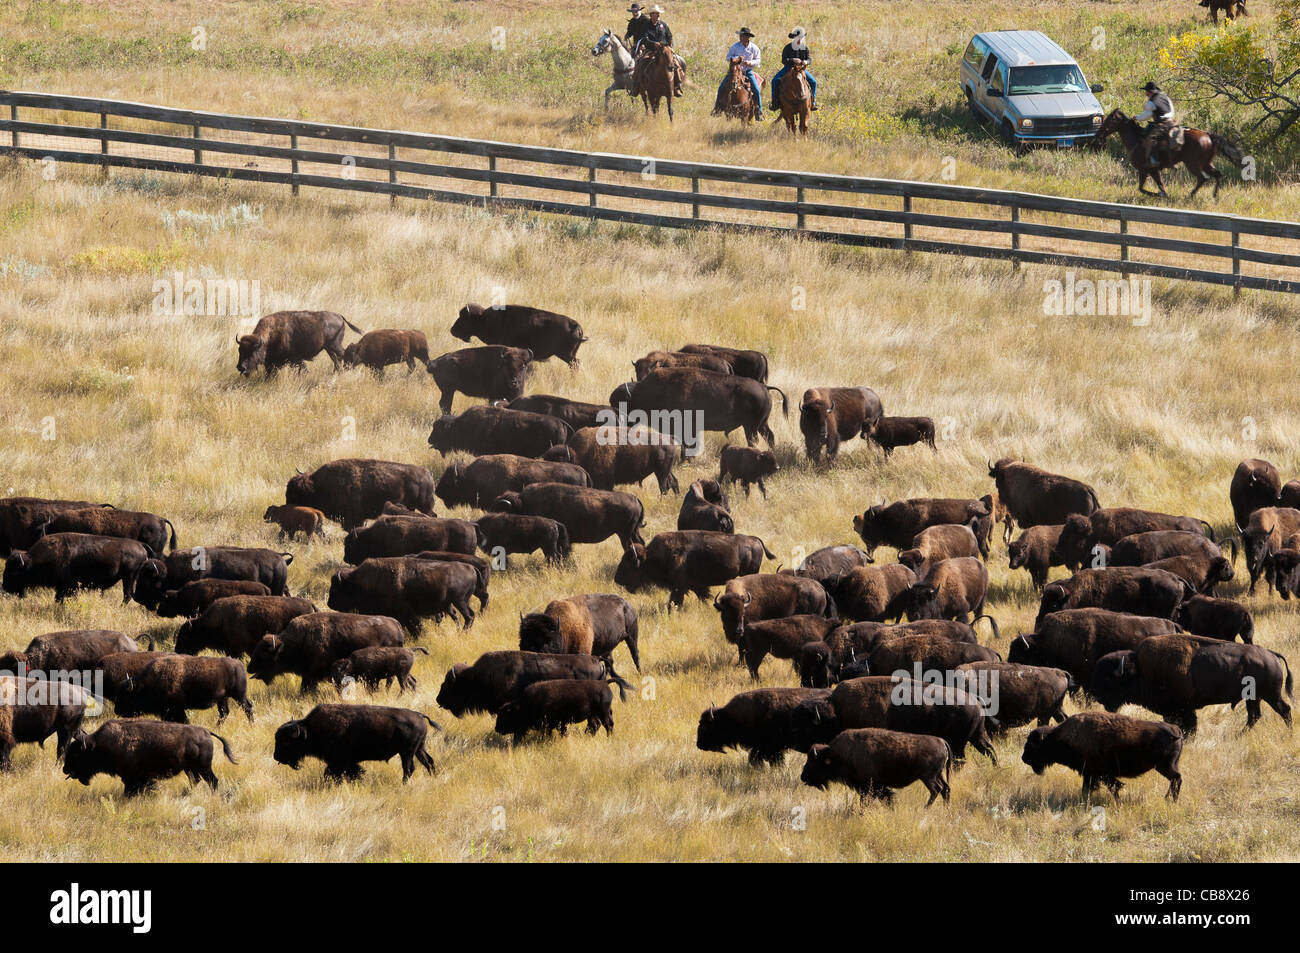 Bison d'Amérique (Bison bison) au niveau de la clôture, Custer State Park Buffalo Roundup, Custer State Park, dans le Dakota du Sud. Banque D'Images